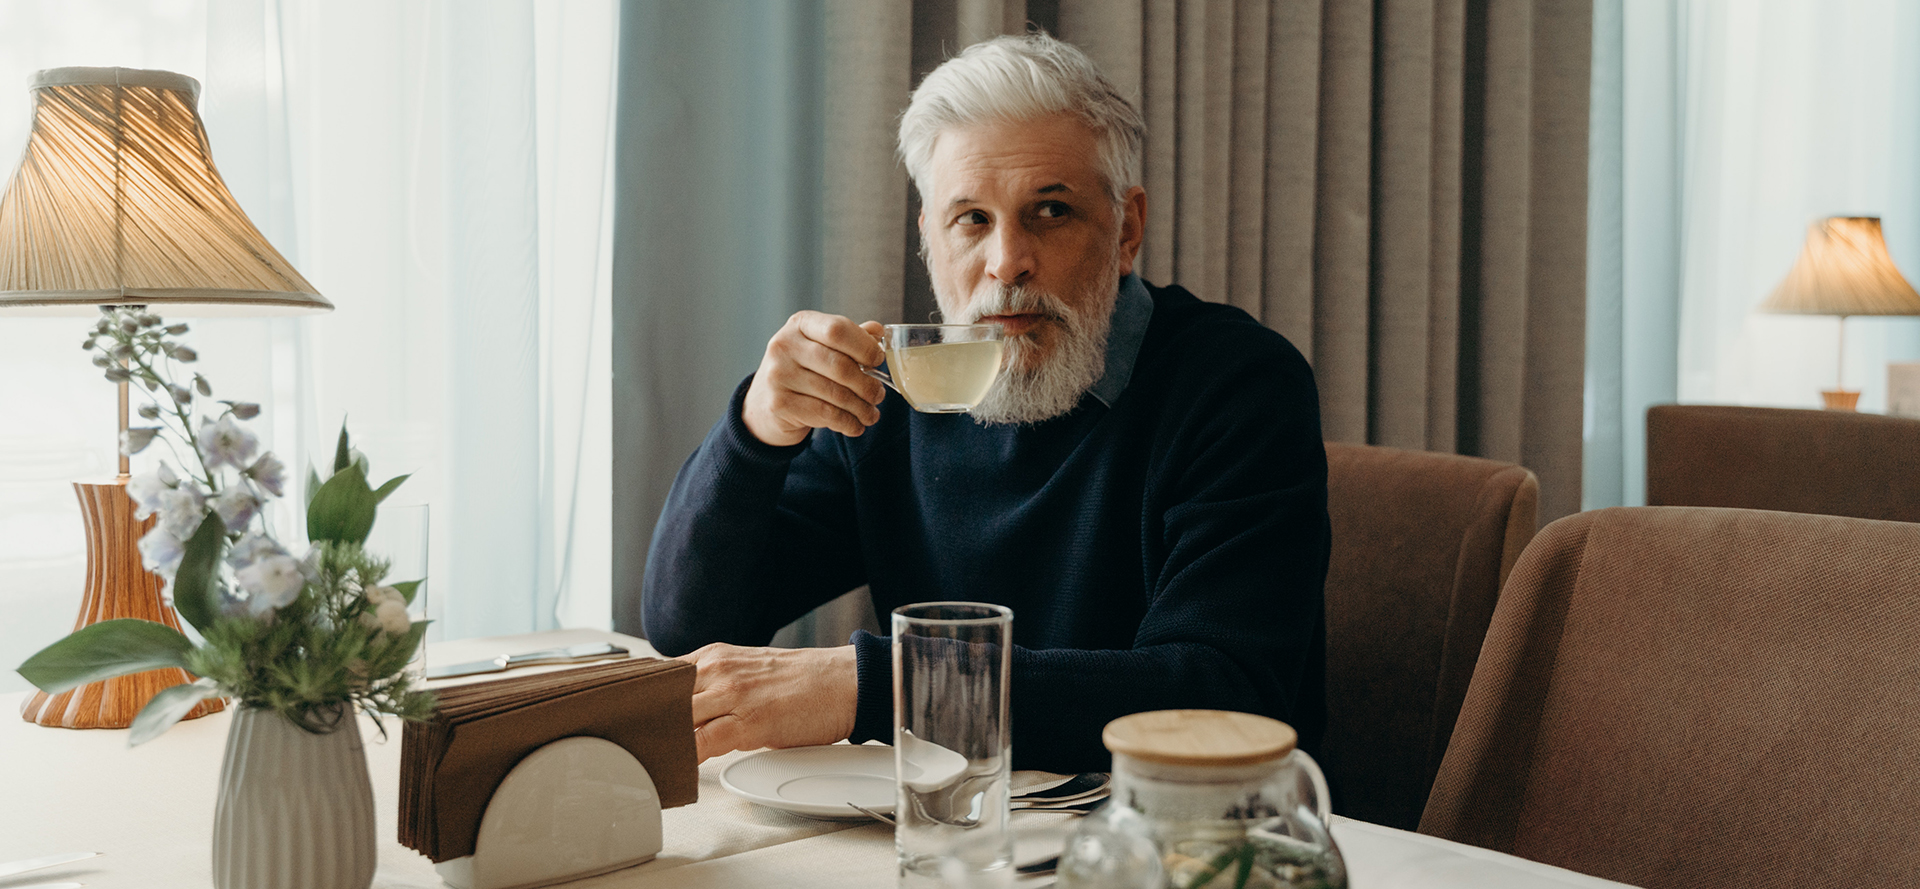 En enslig eldre mann drikker te.